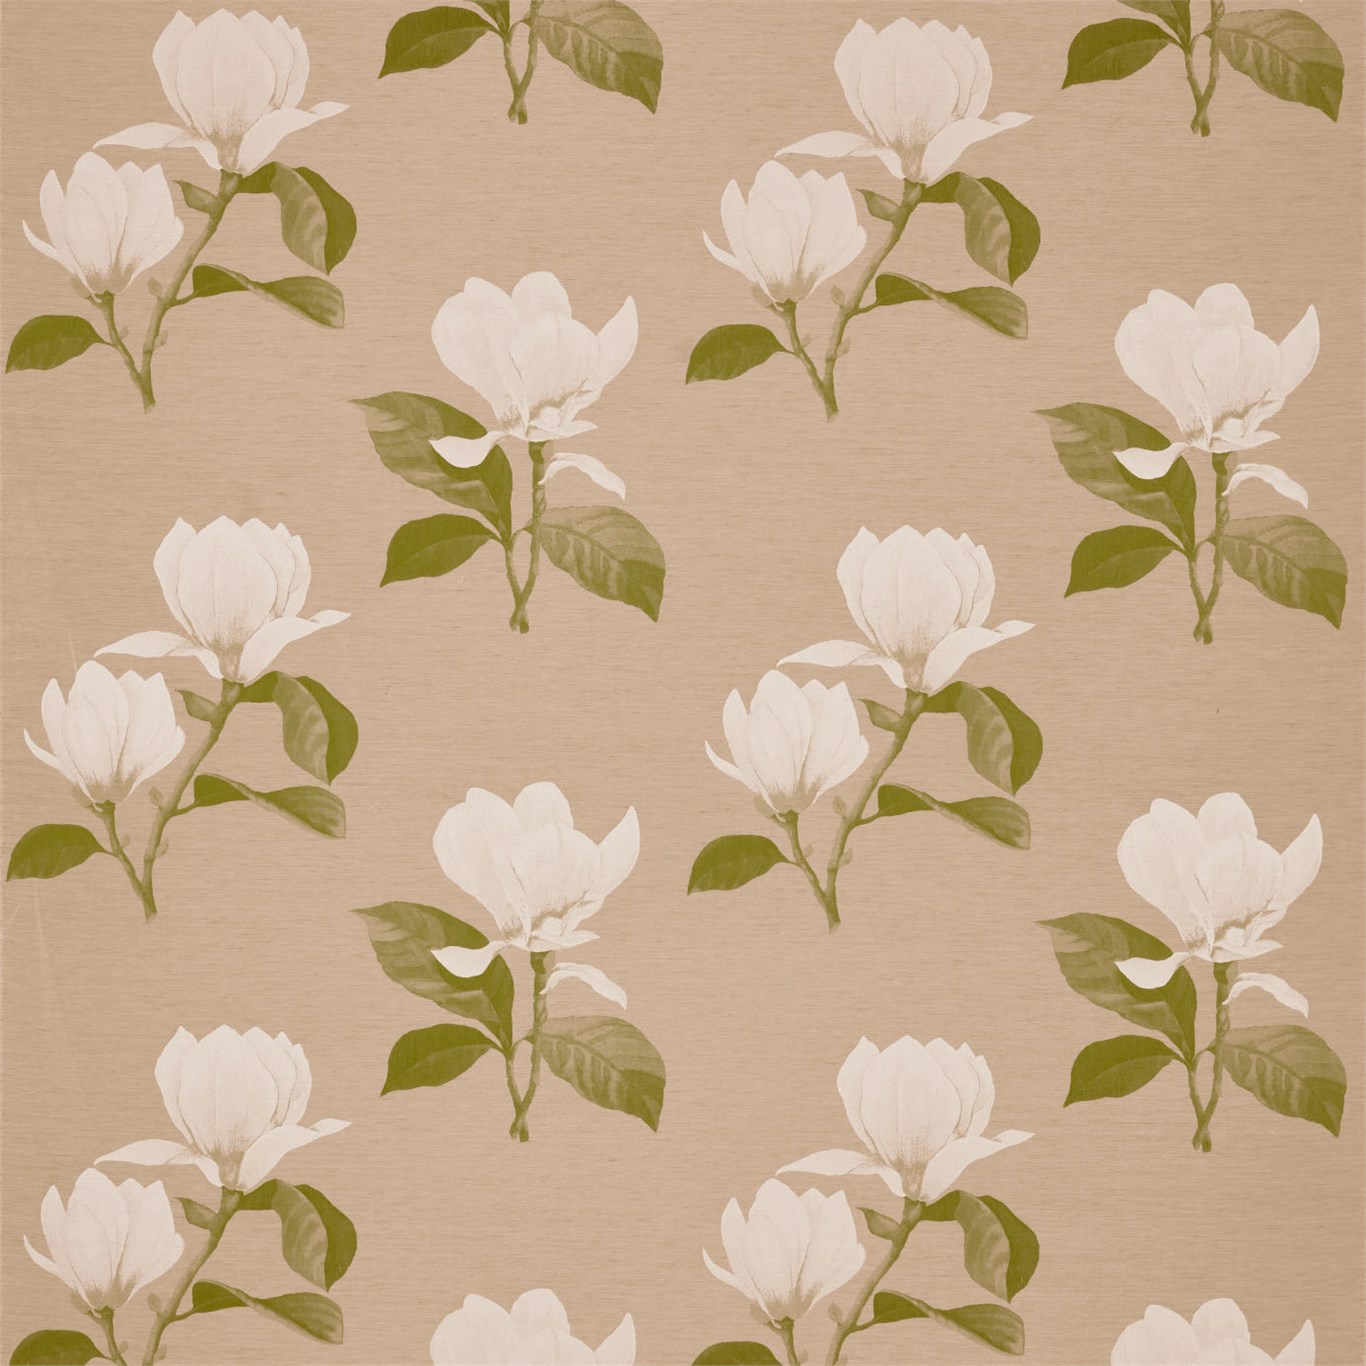 Kobushi Magnolia Leaf Fabric by ZOF